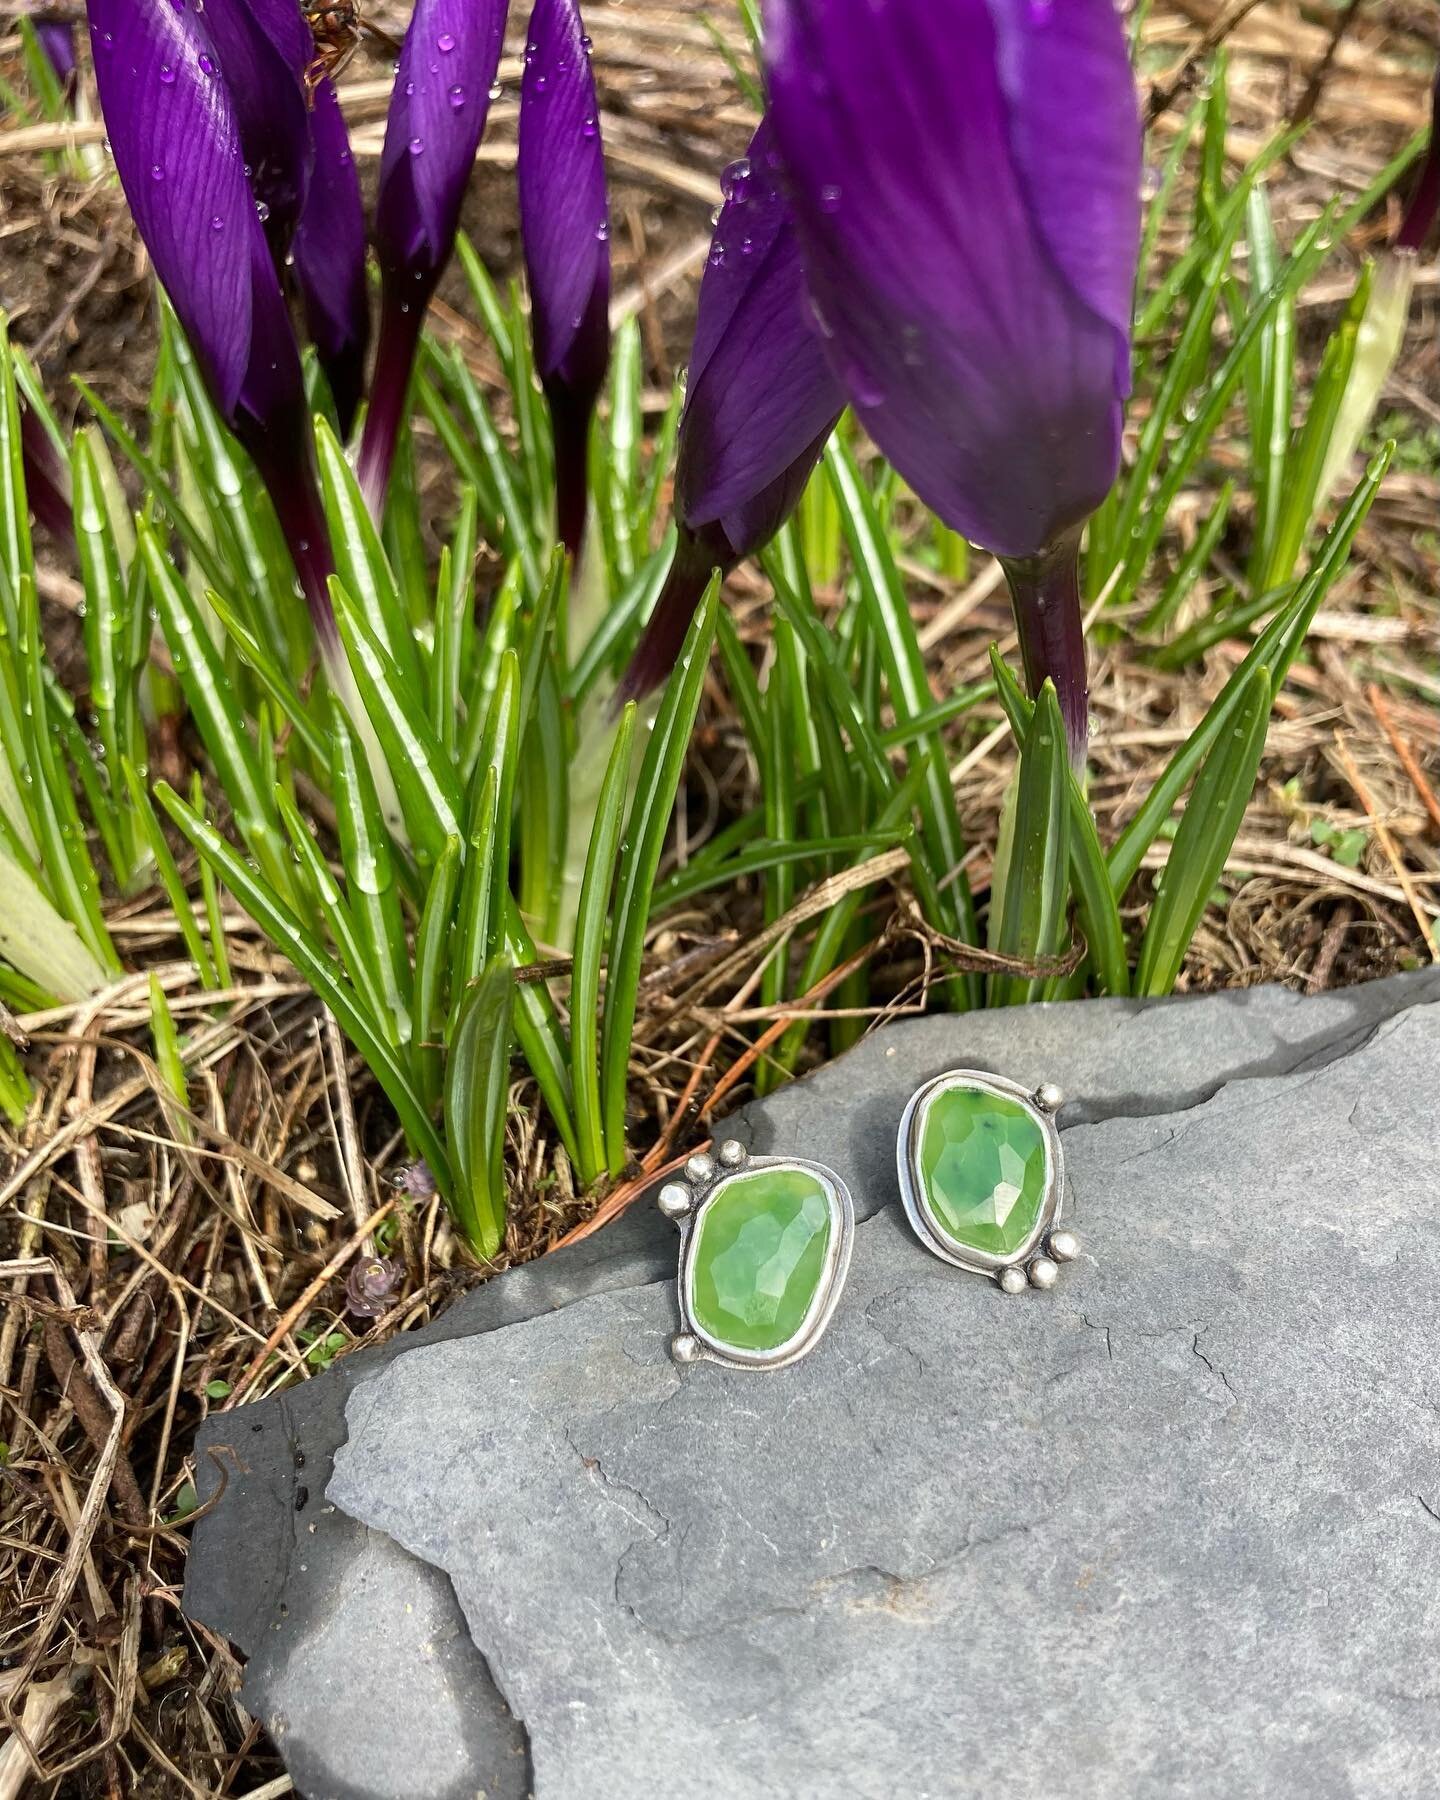 Spring things are happening 💚
#earrings #handmadejewelry #artistmade #contemporaryjewelrydesign #spring #💚